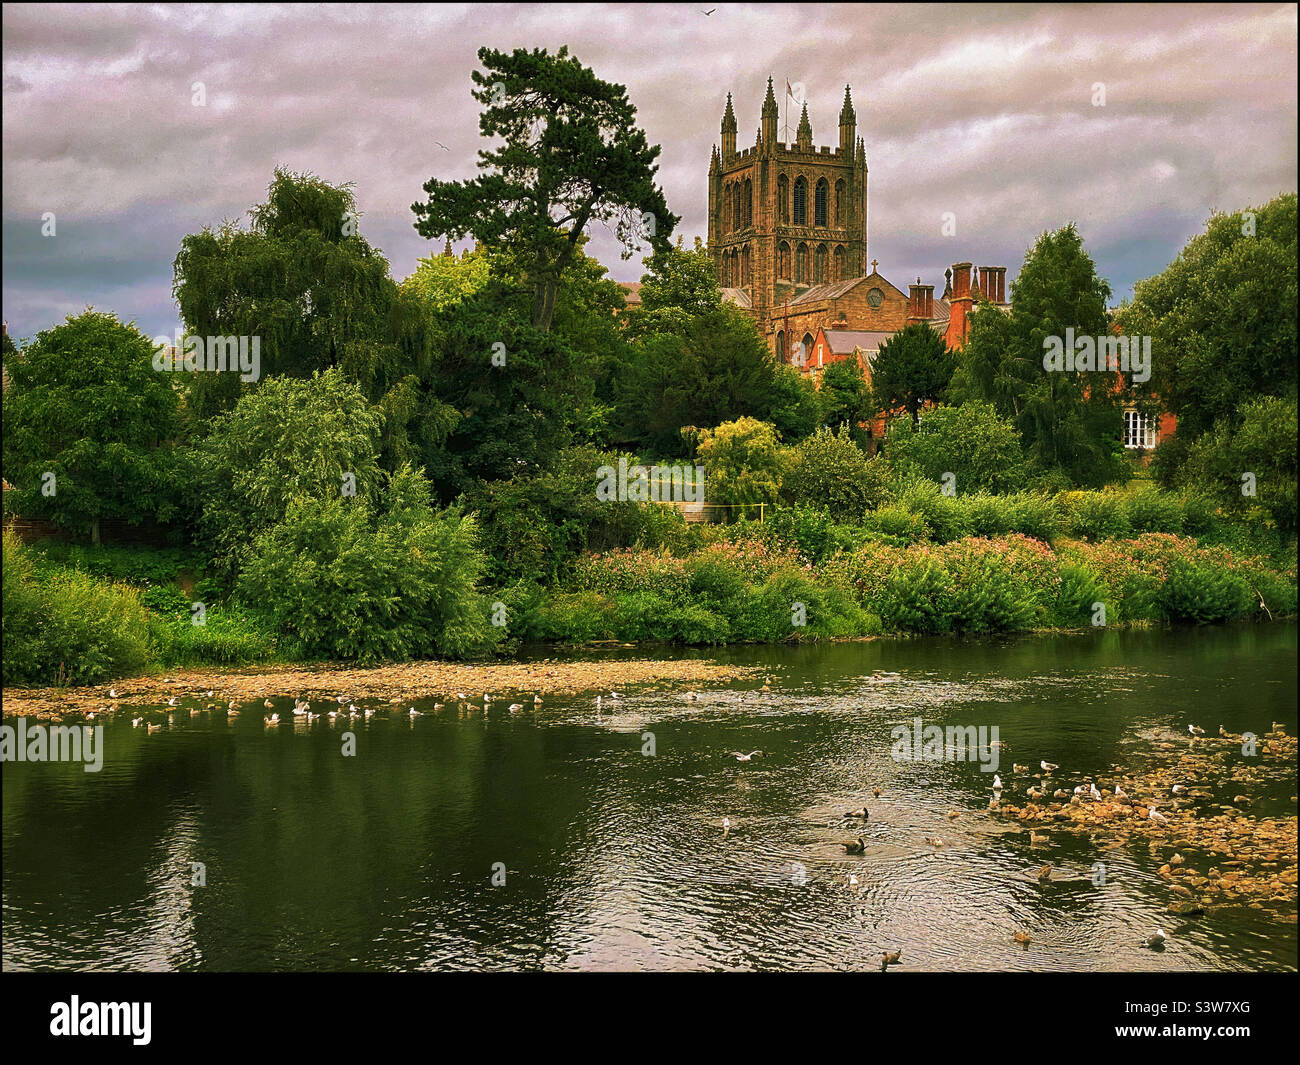 Una vista che guarda a nord attraverso il fiume Wye verso la Cattedrale di Hereford in Inghilterra. Questa struttura gotica fu costruita intorno al 1189 e ospita la famosa Mappa Mundi. Foto ©️ COLIN HOSKINS. Foto Stock